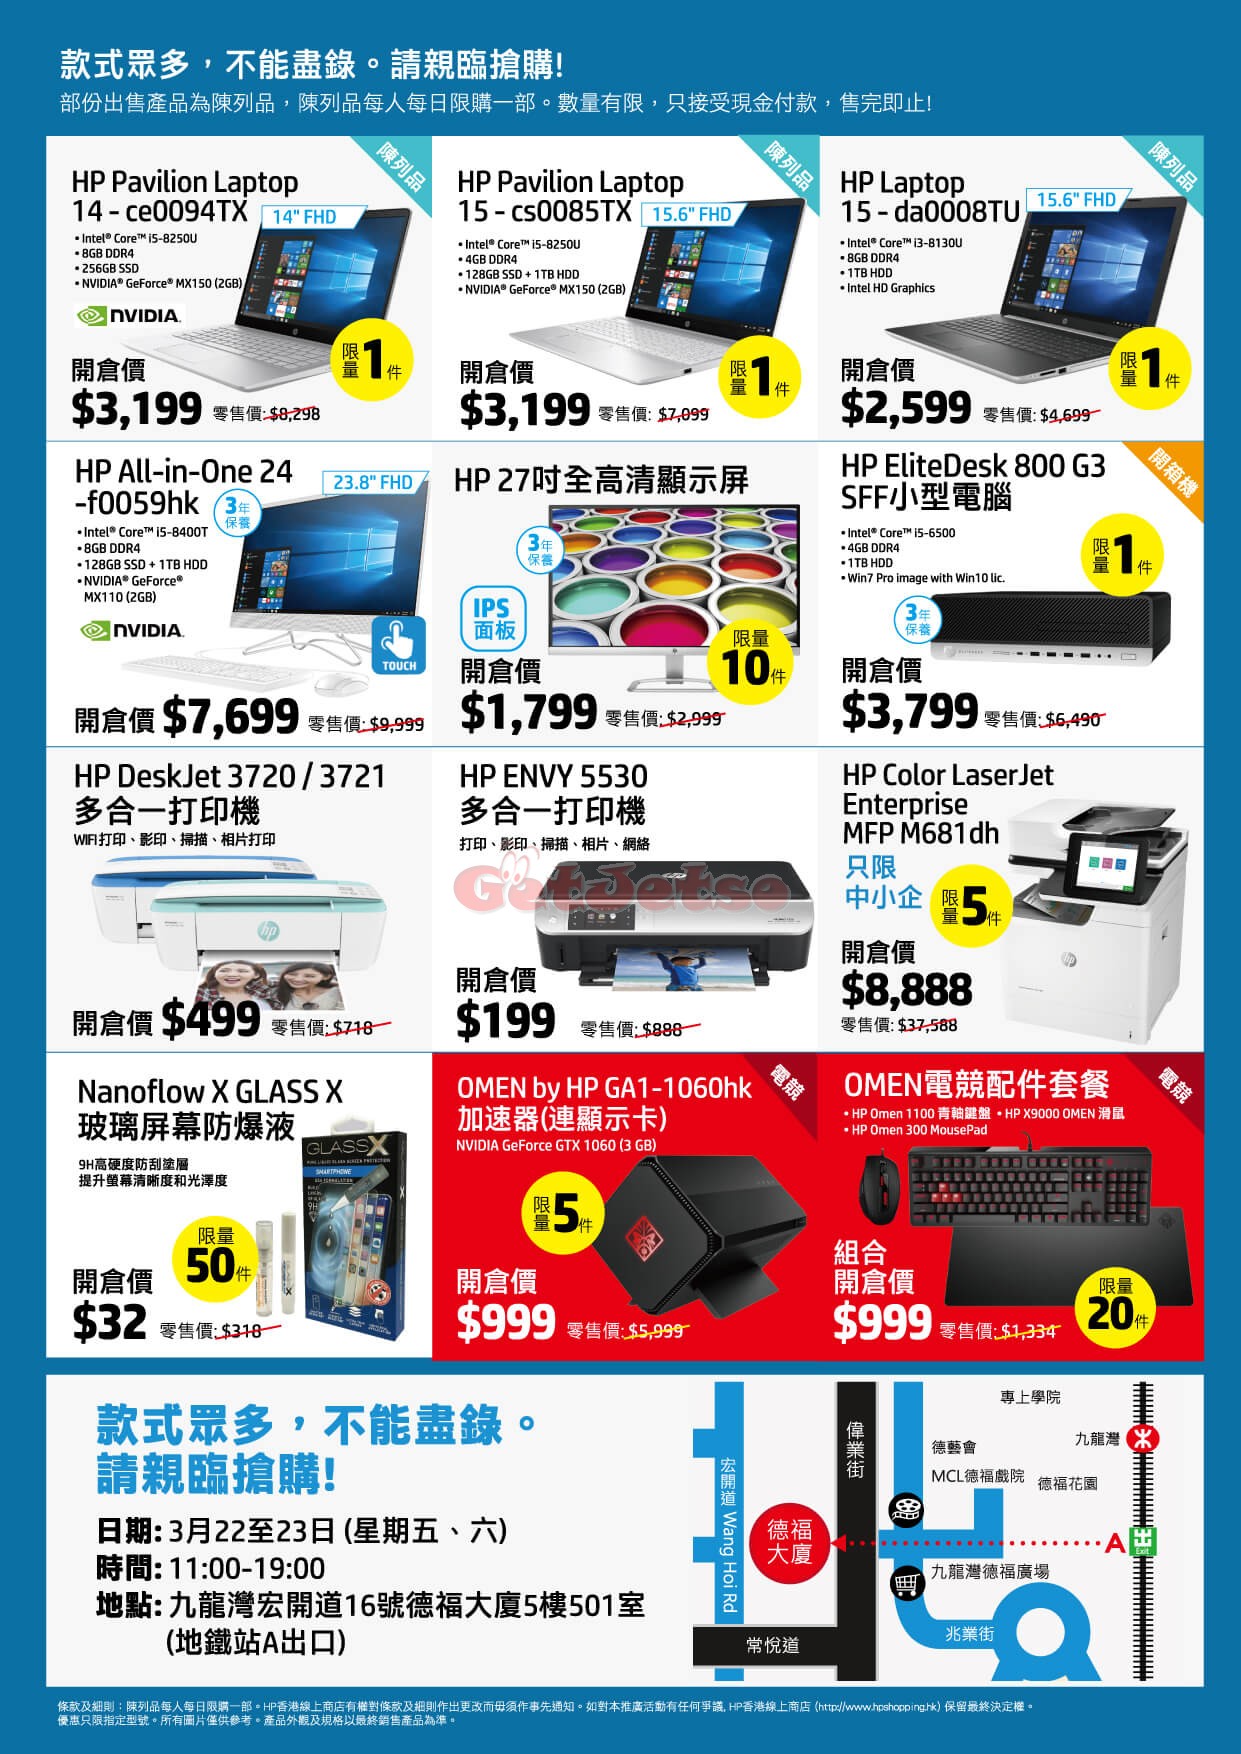 HP 電腦低至1折開倉優惠@九龍灣(19年3月22-23日)圖片2